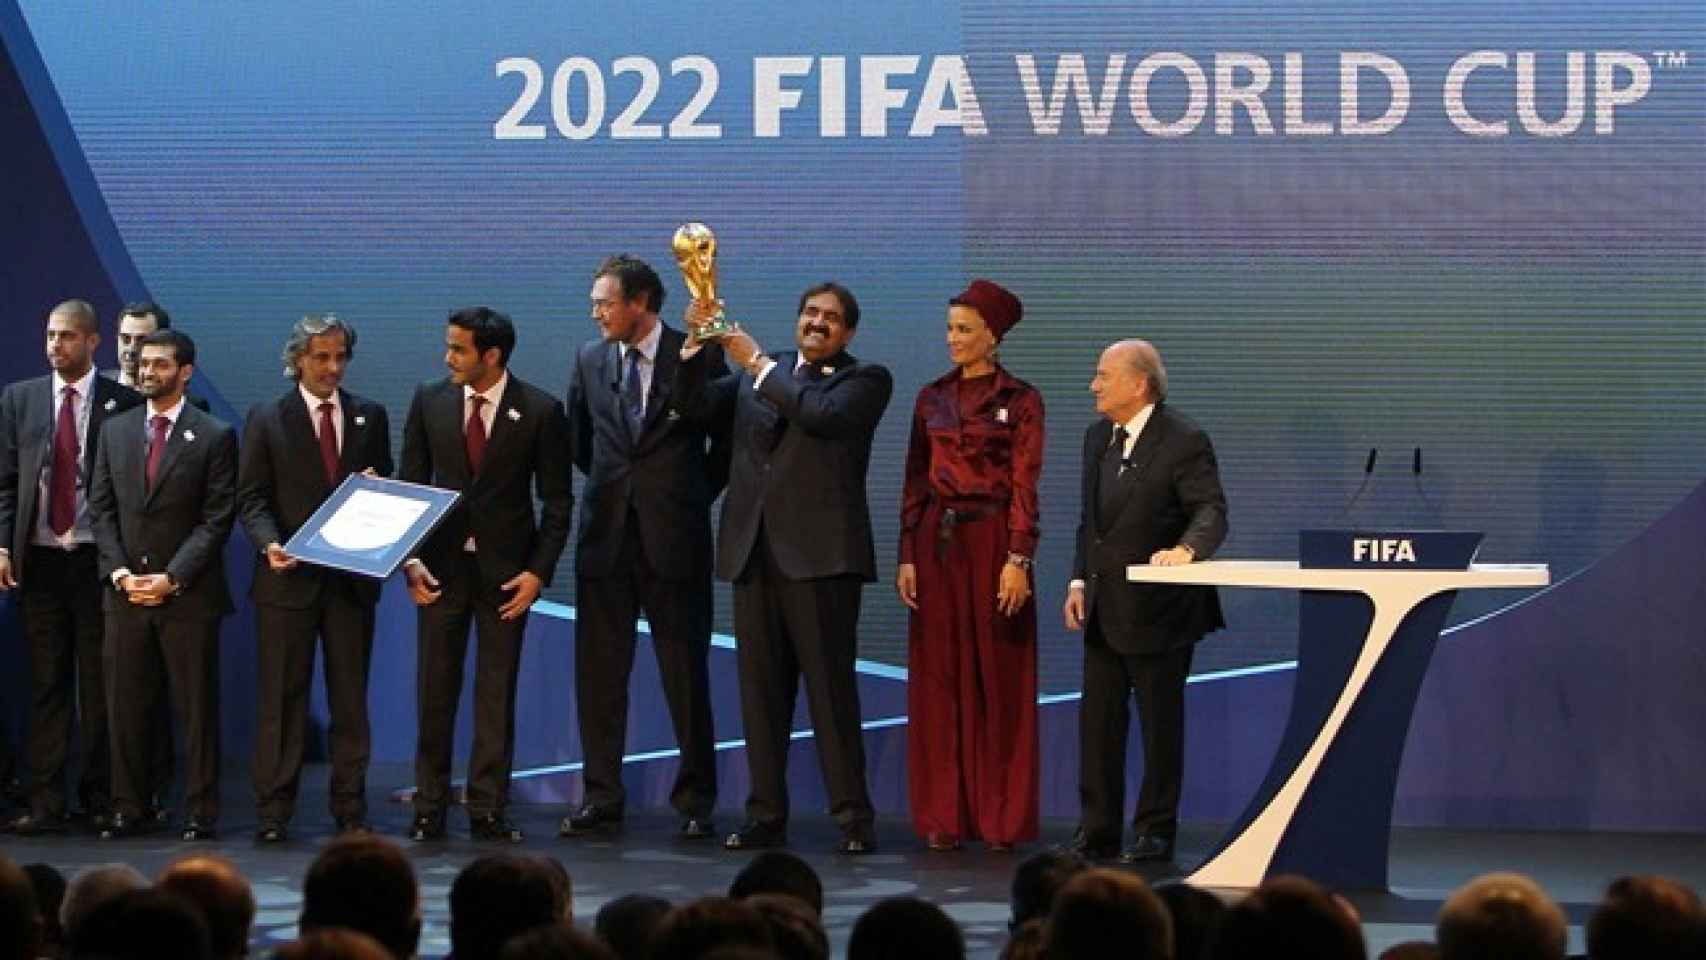 La FIFA anuncia que Catar se lleva el Mundial 2022. Foto: fifa.com